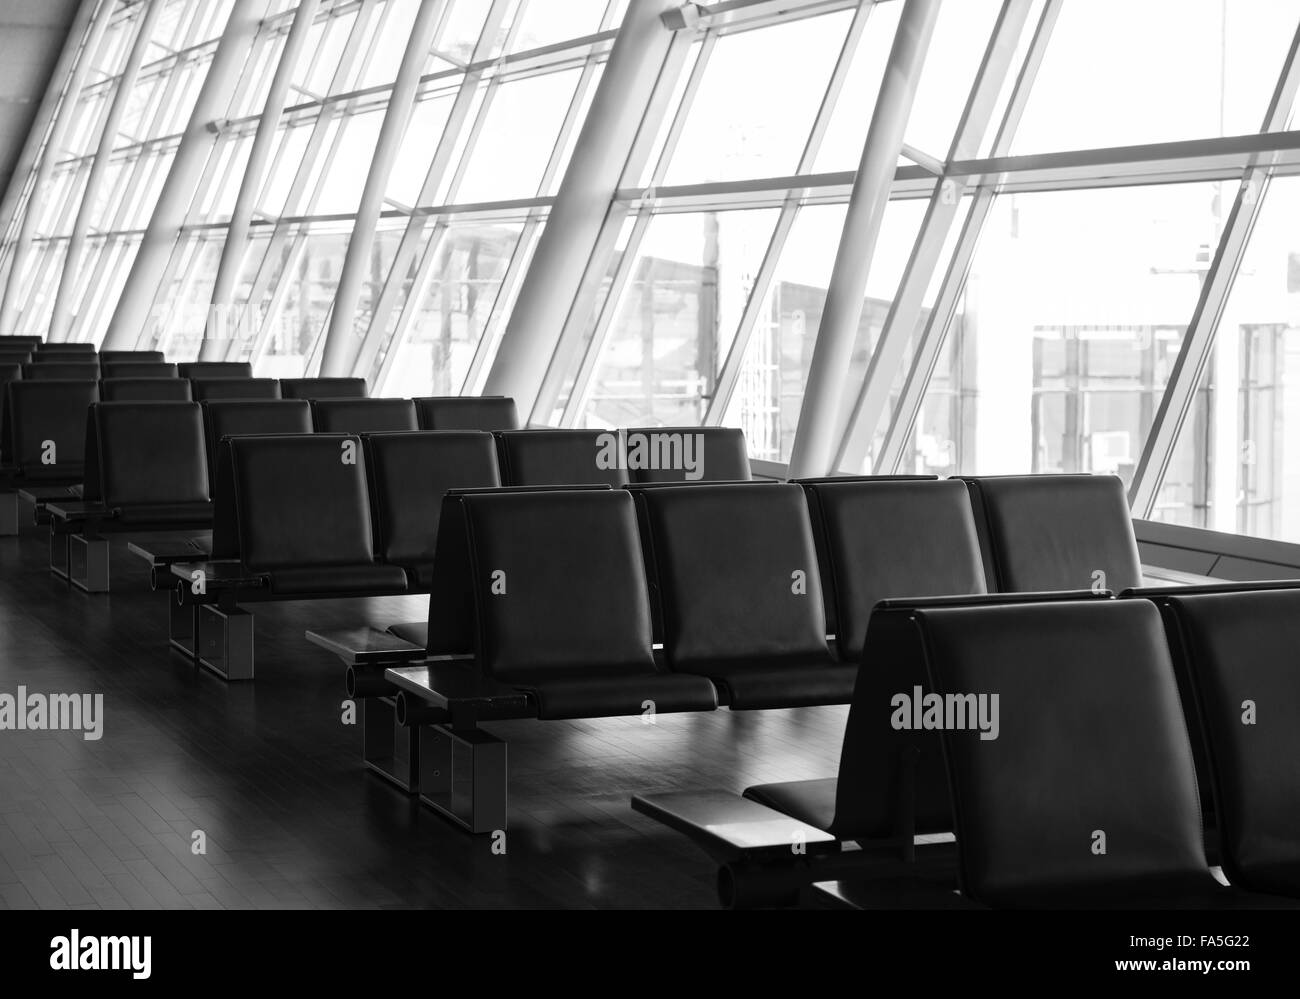 Rangée de sièges dans un terminal de l'aéroport Banque D'Images